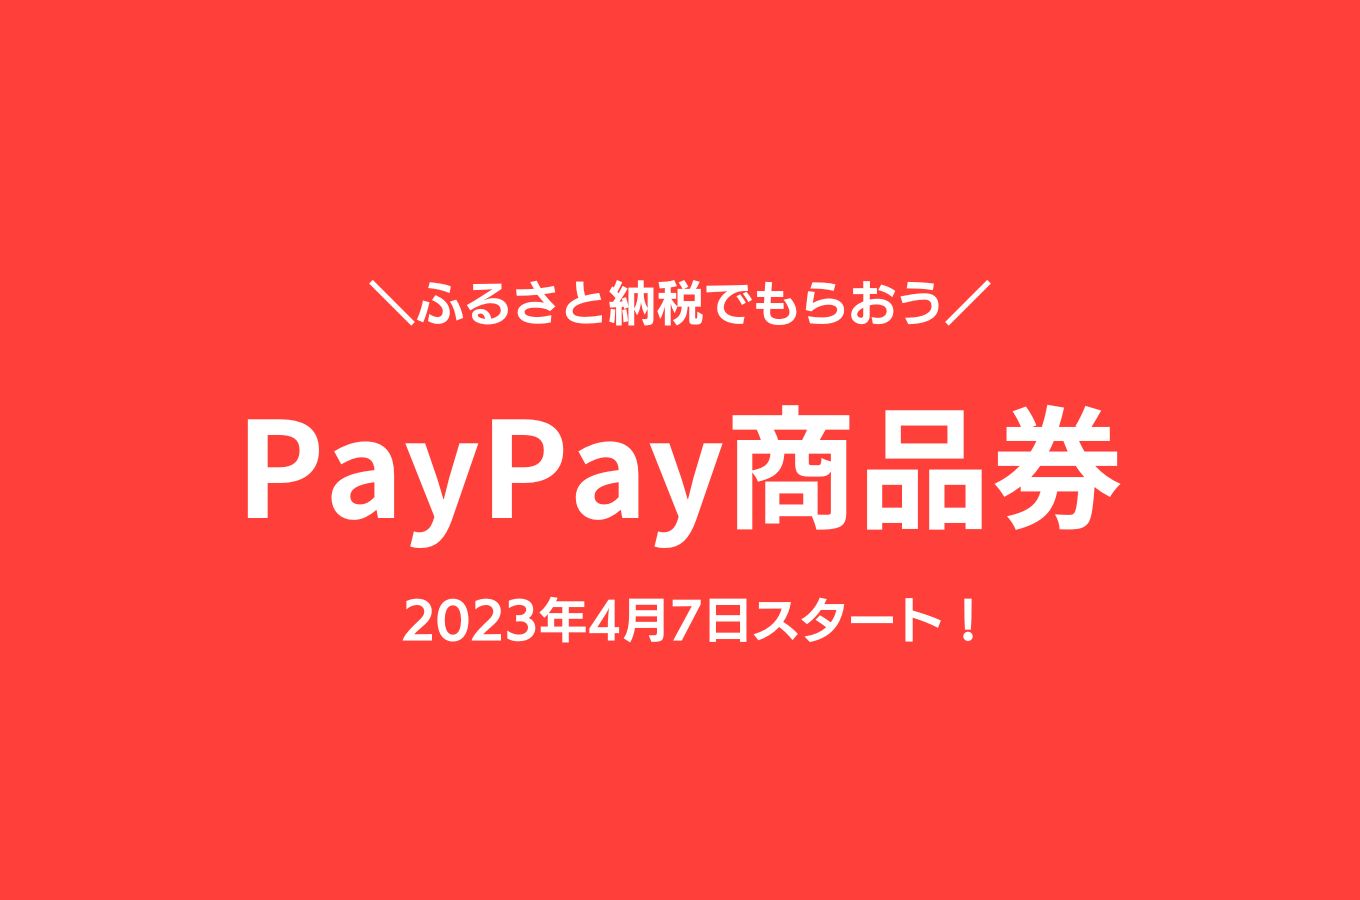 【4/7~】PayPay商品券ご利用について【佐渡市ふるさと納税】